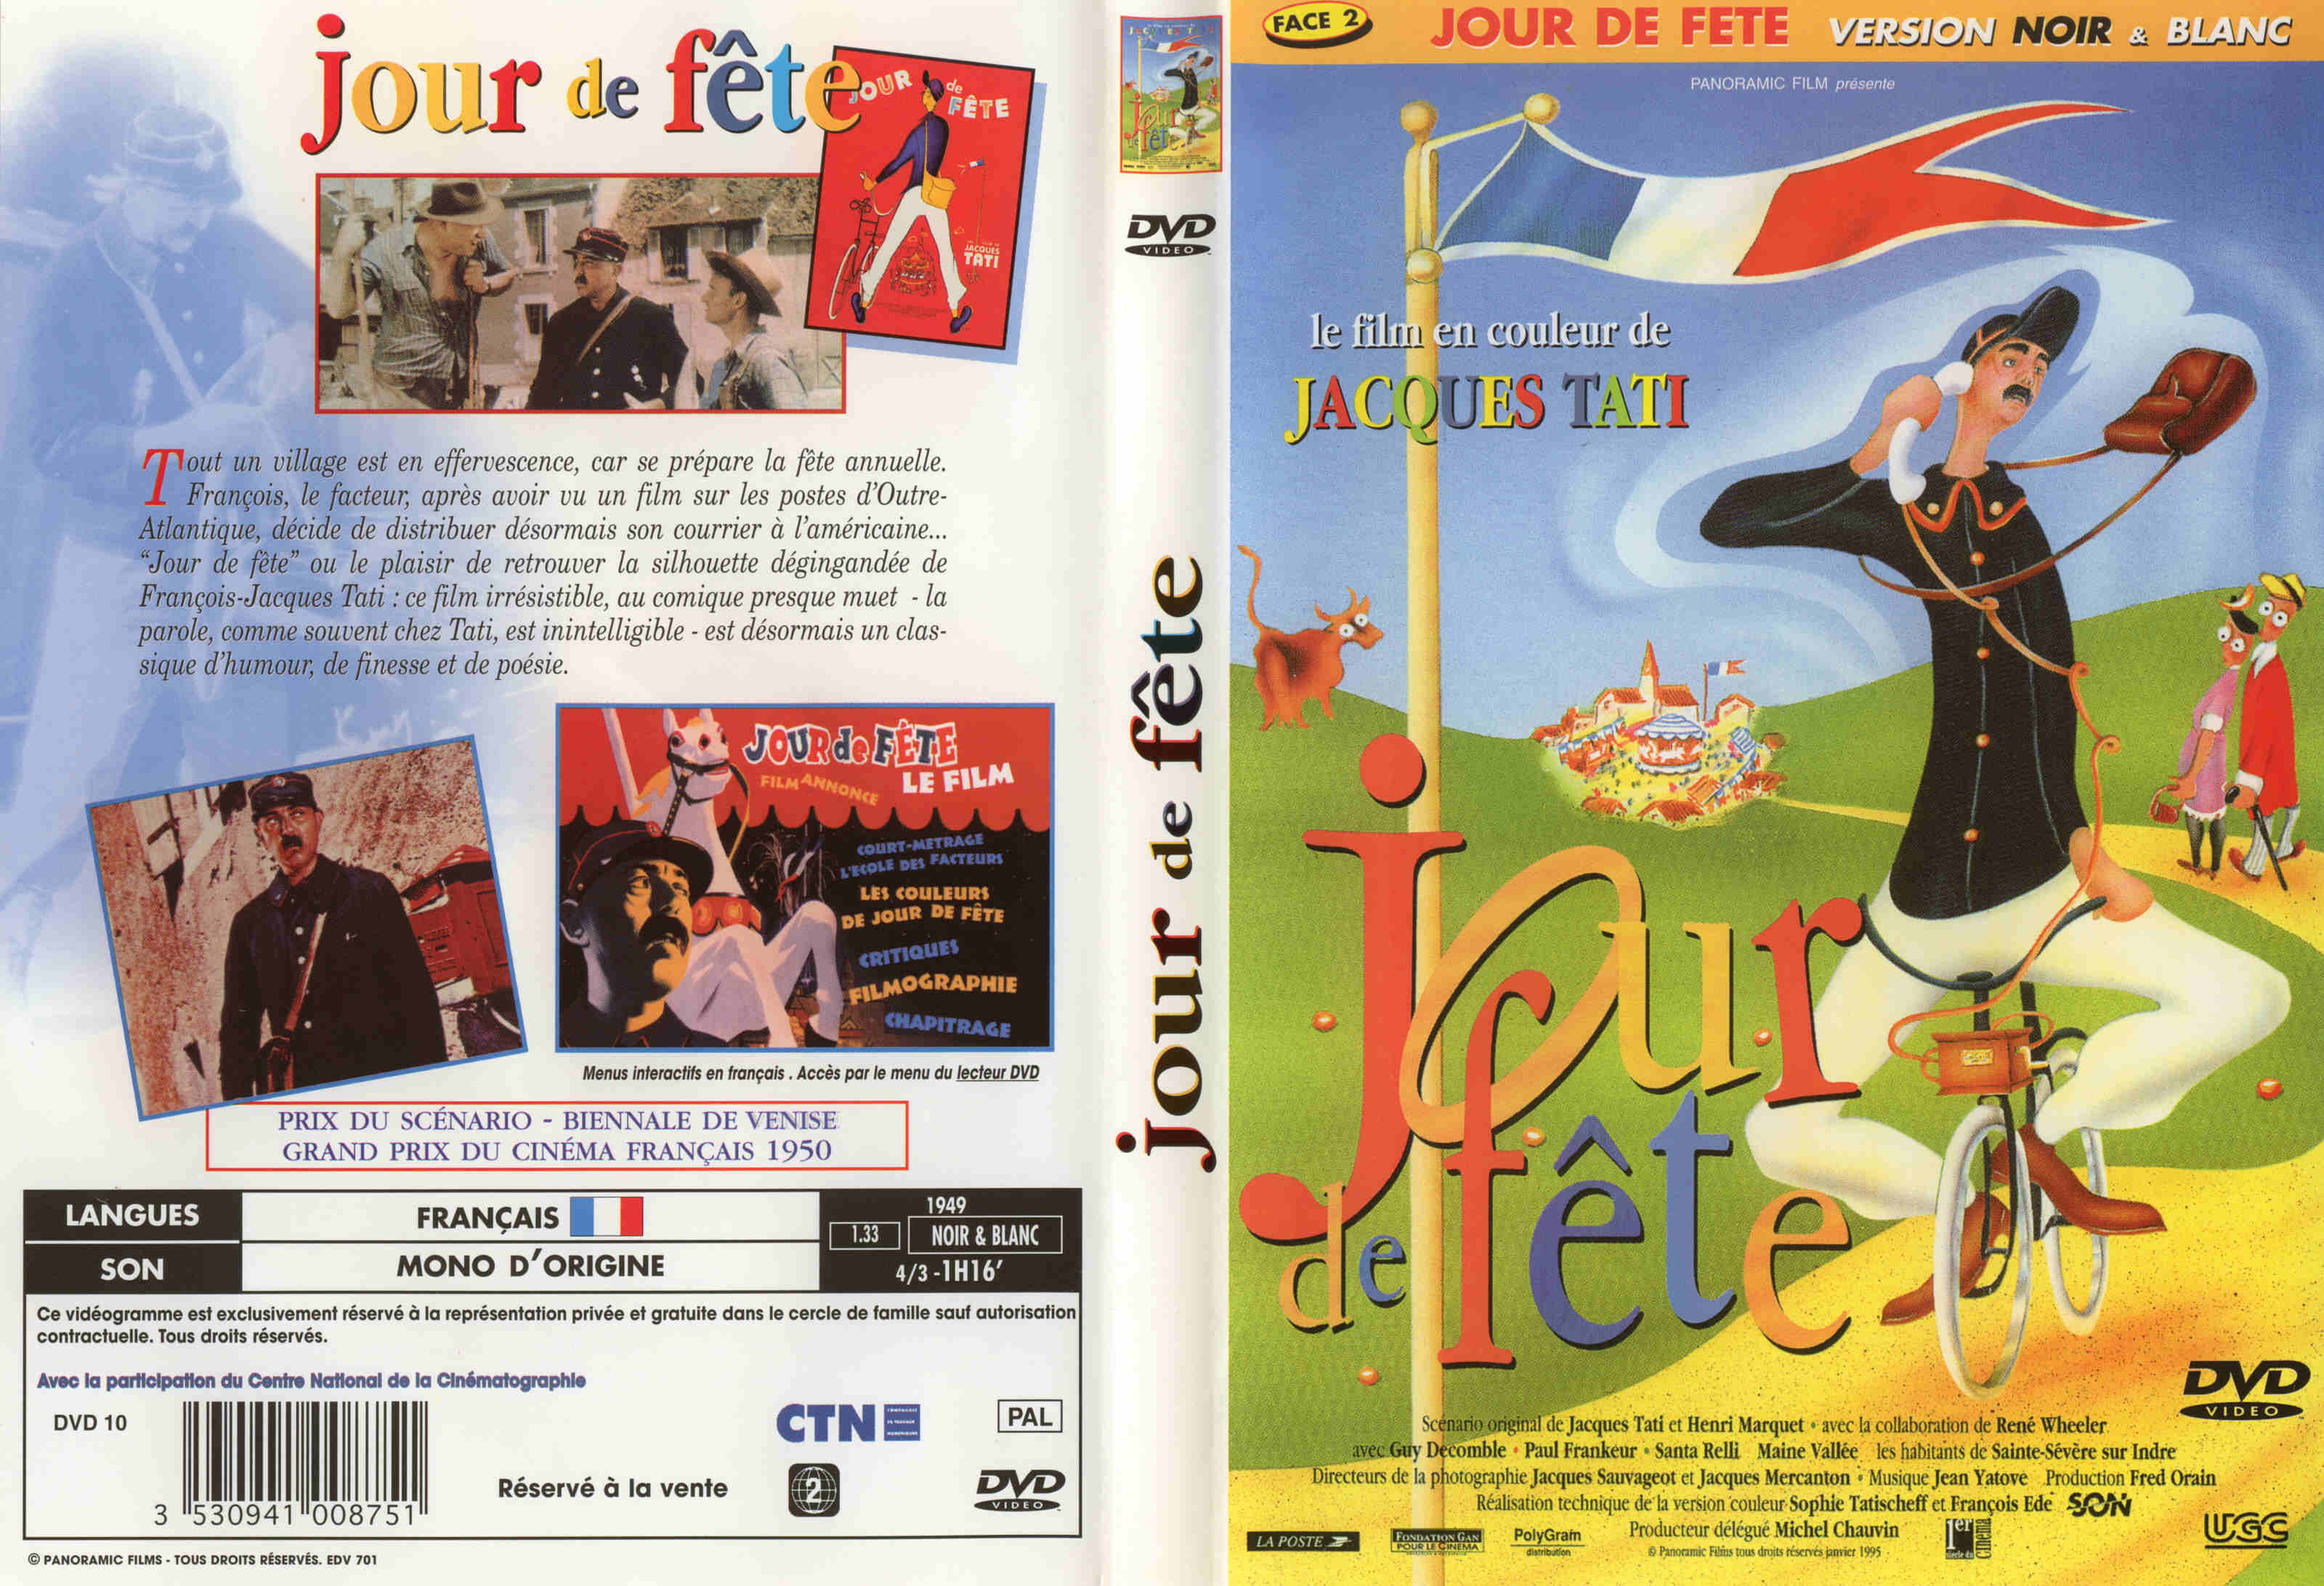 Jaquette DVD Jour de fte